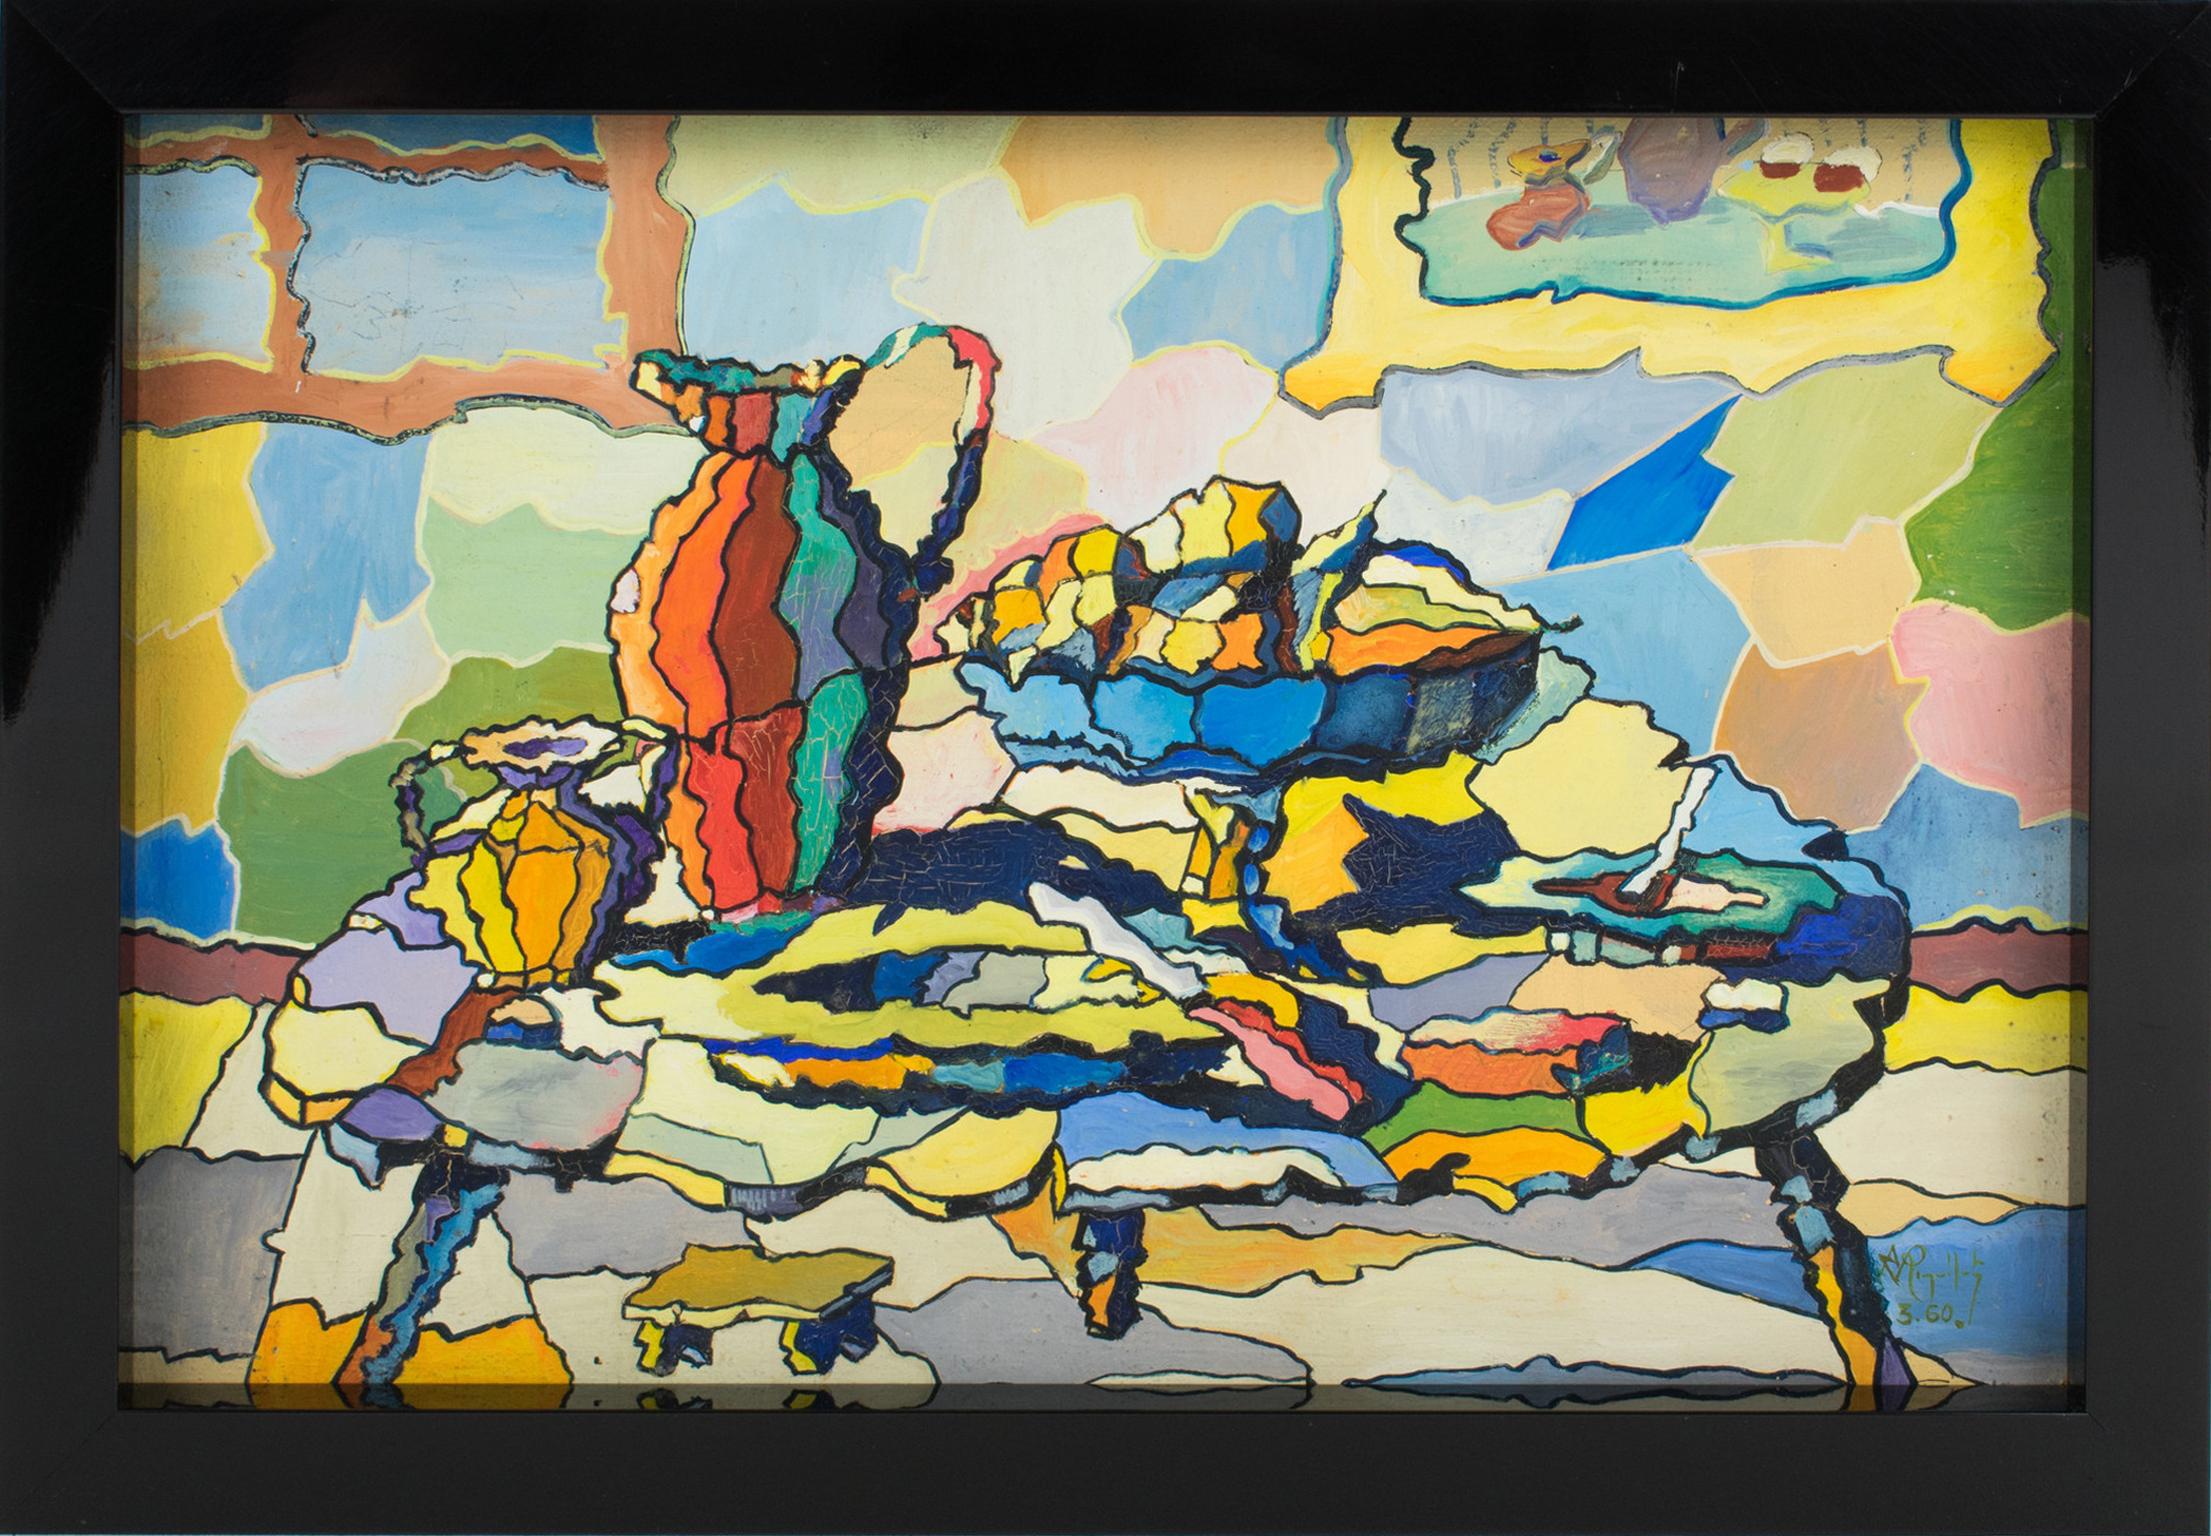 Abstraktes Stillleben im Kaleidoskop-Stil von A. Rigollot, postkubistisches Ölgemälde